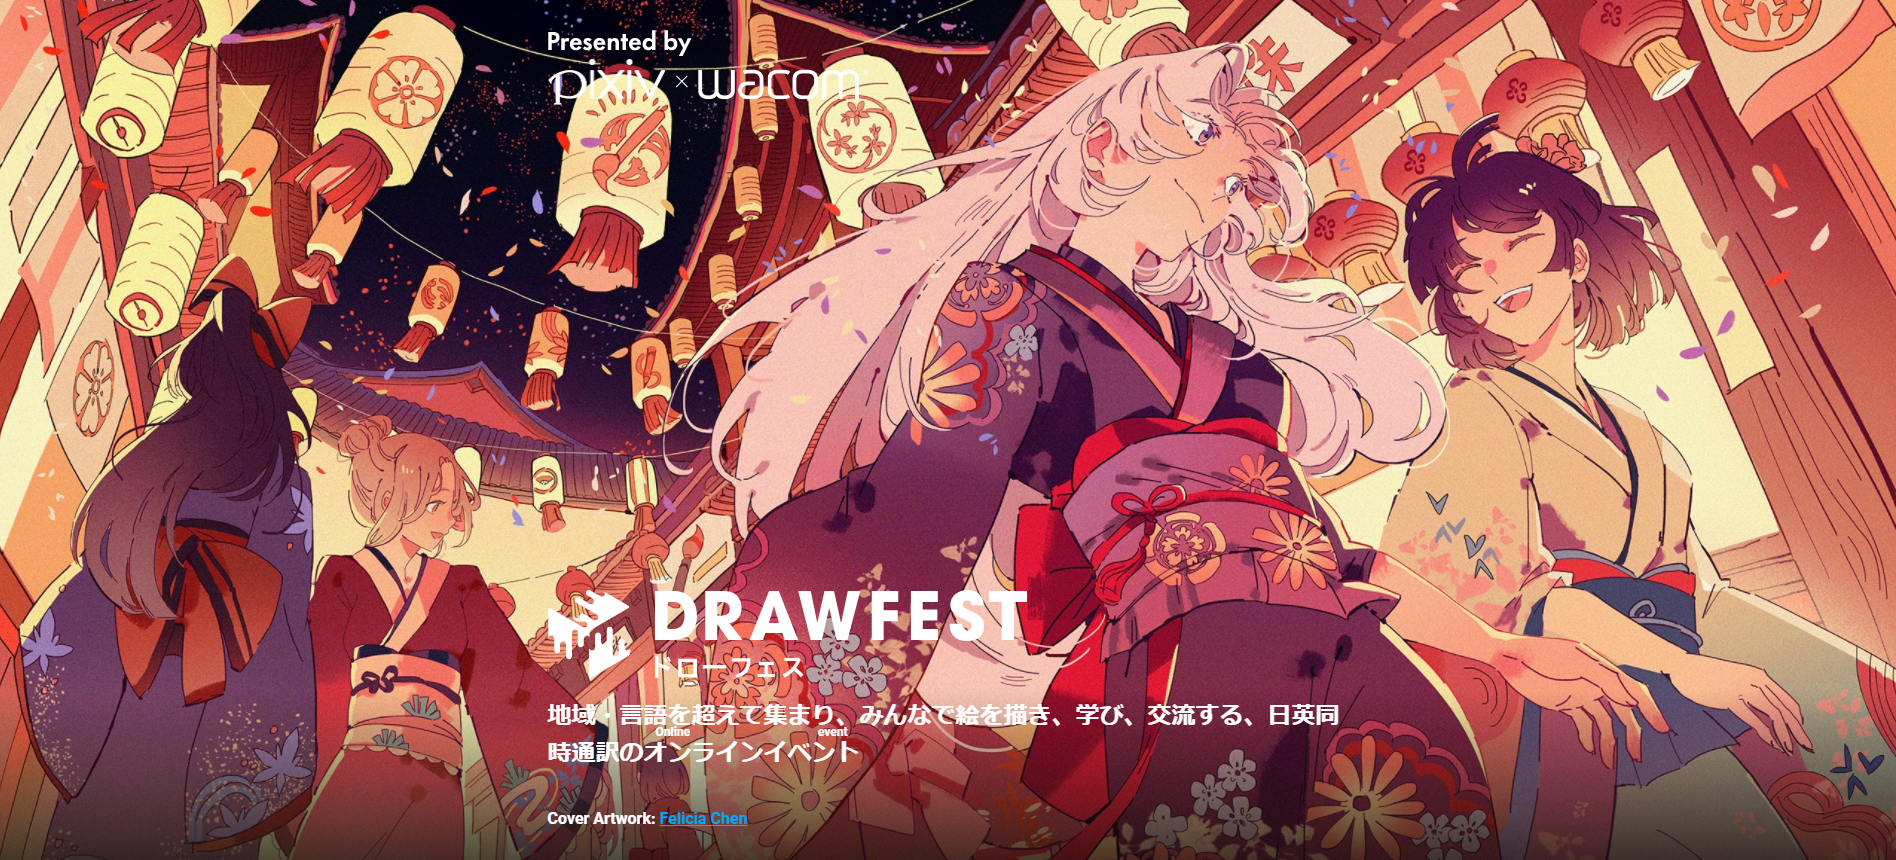 知名绘画网站pix×Wacom宣布共同举办大型线上作画活动「Drawfest」